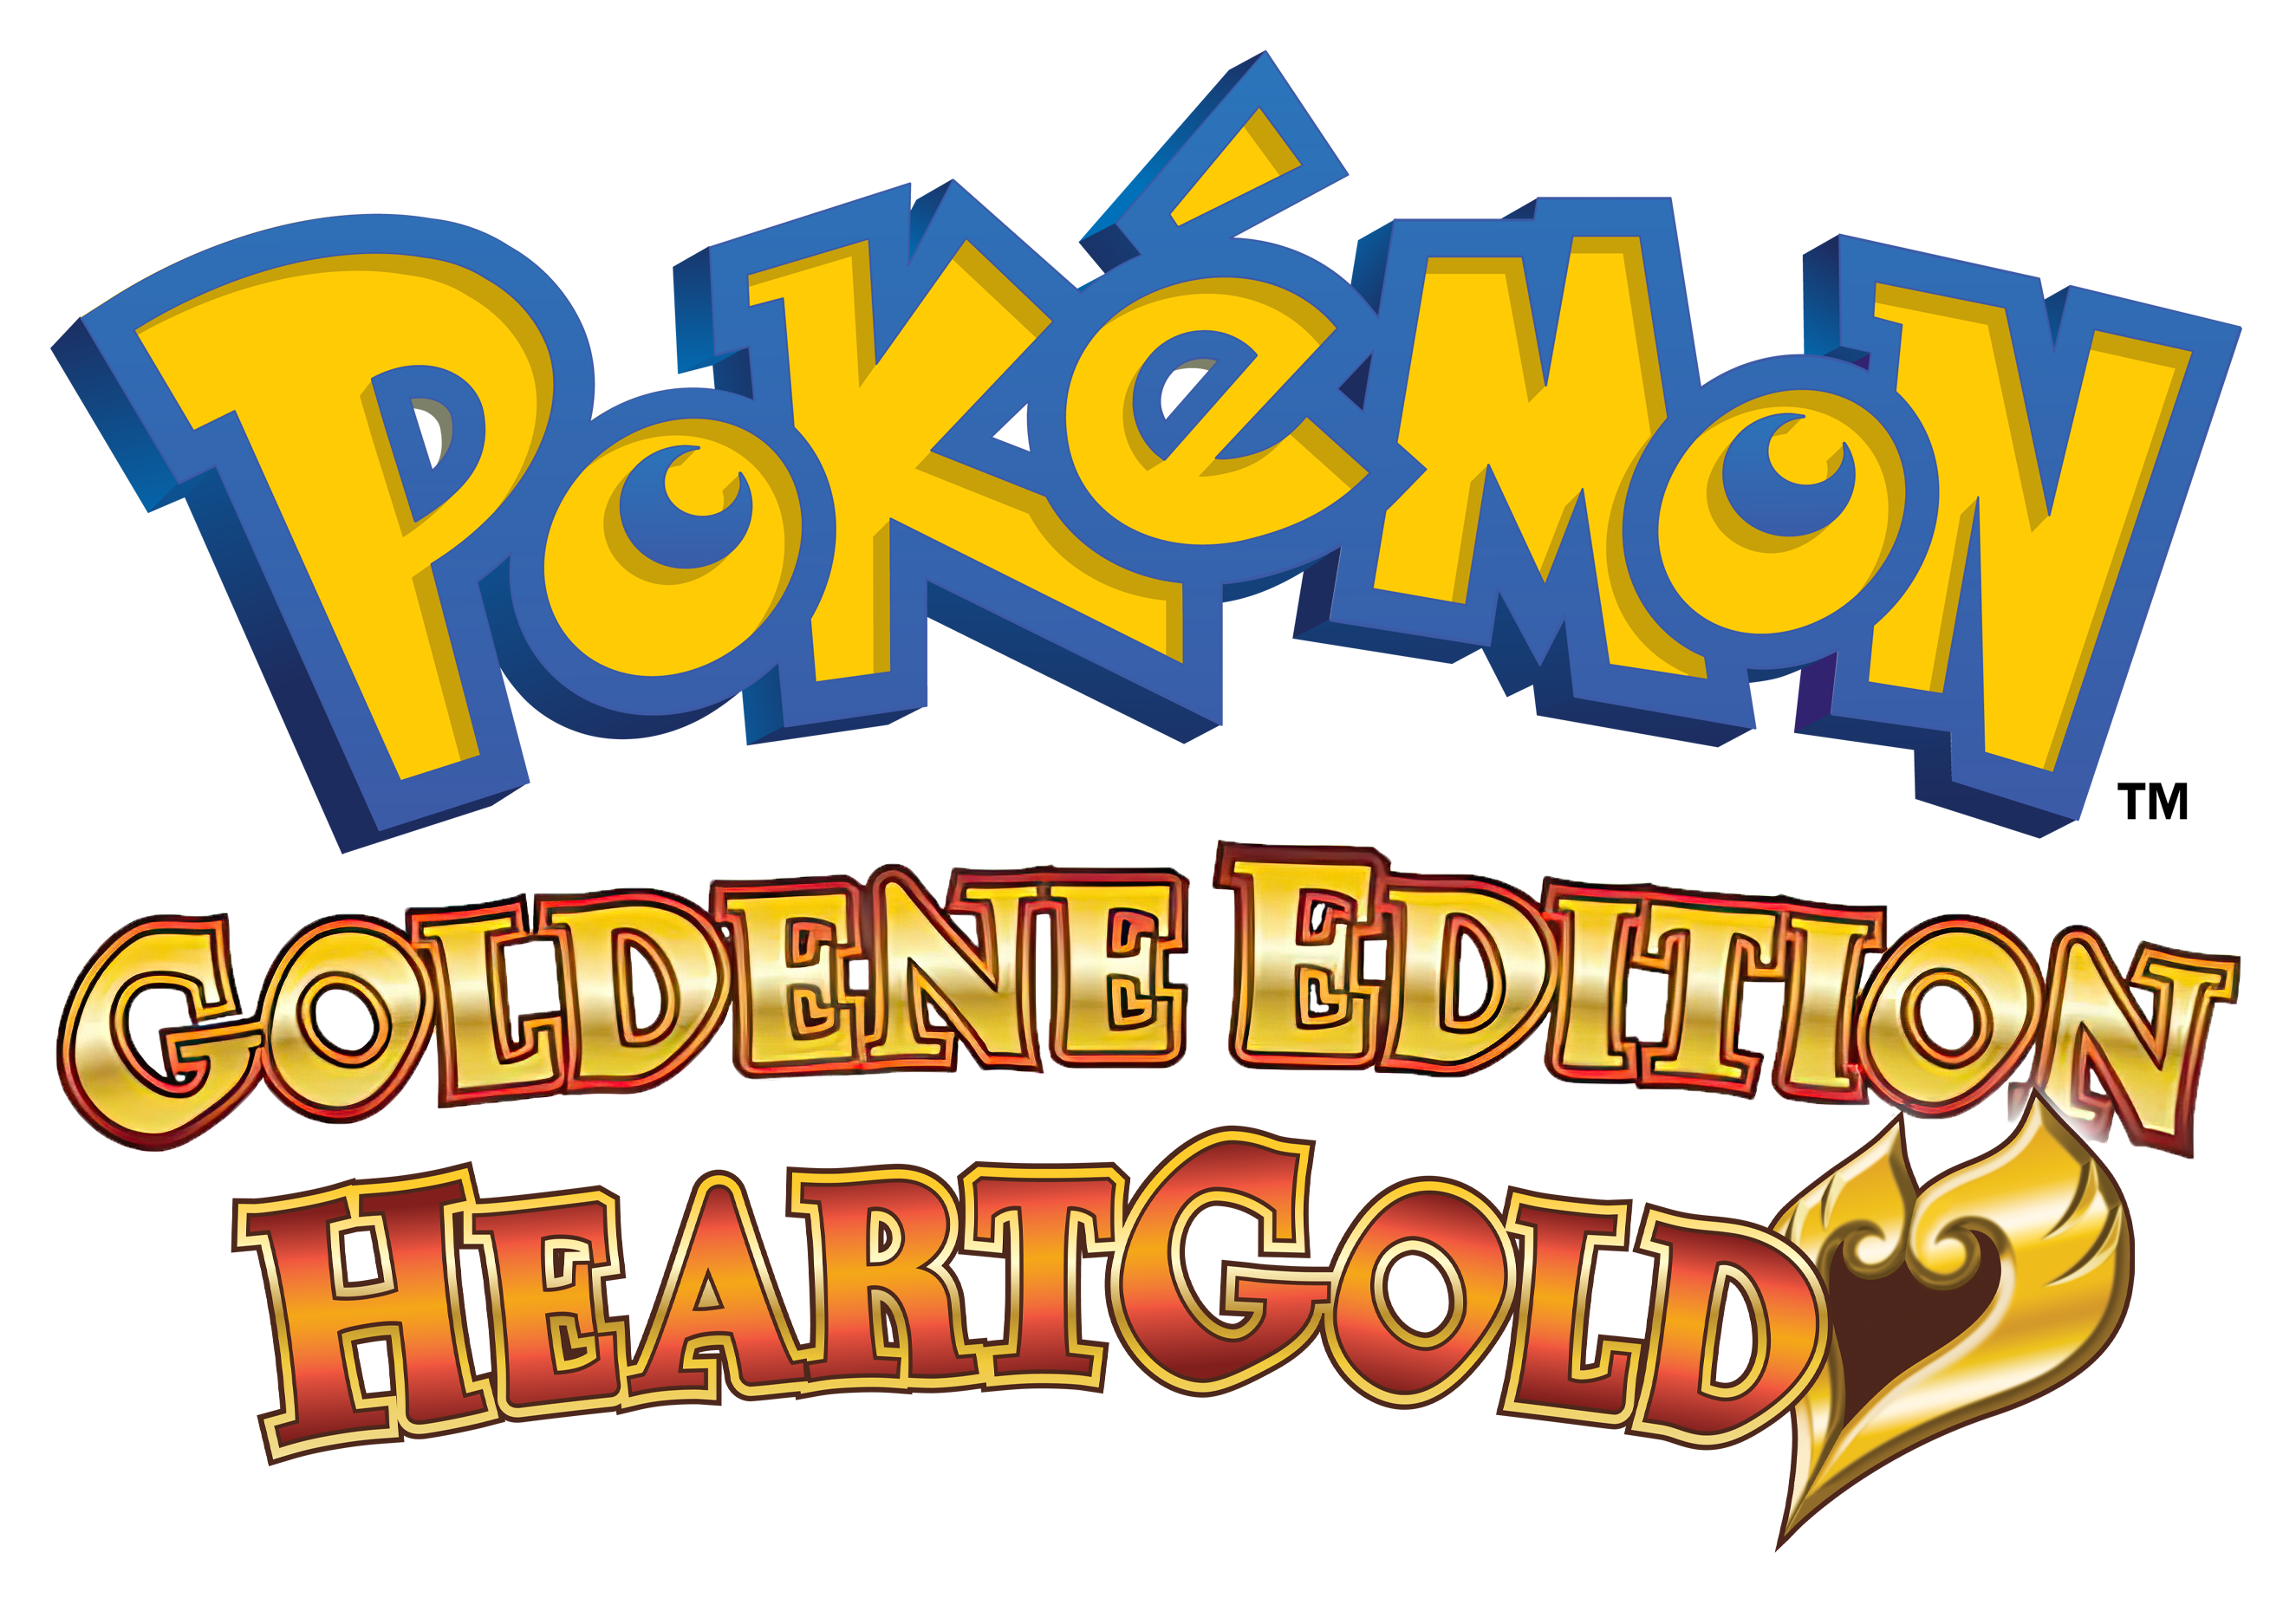 Pokémon HeartGold Version - SteamGridDB